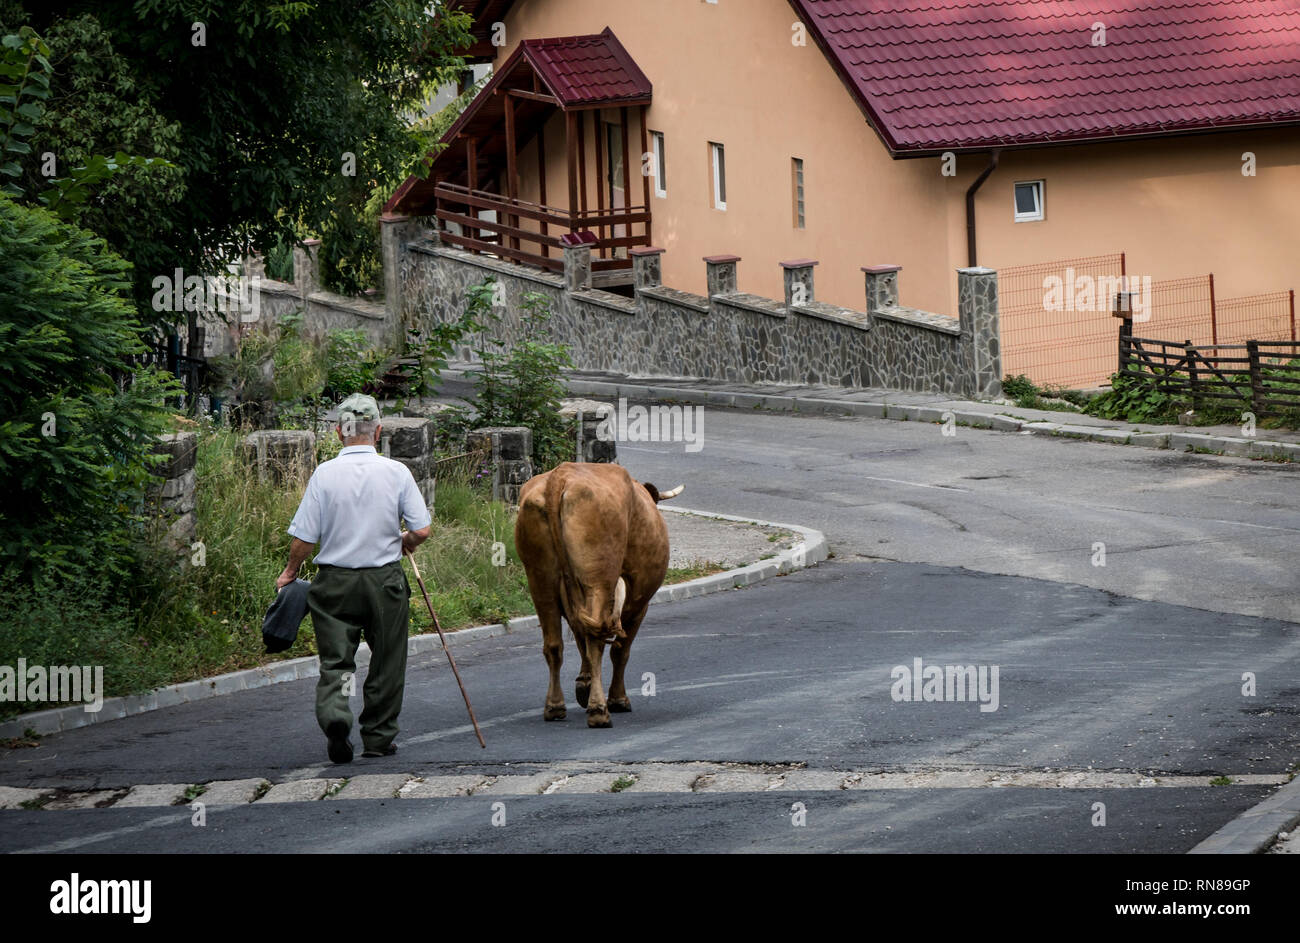 L'homme et la vache qui marche dans la rue en ville roumaine, un moment de la vie quotidienne. Banque D'Images